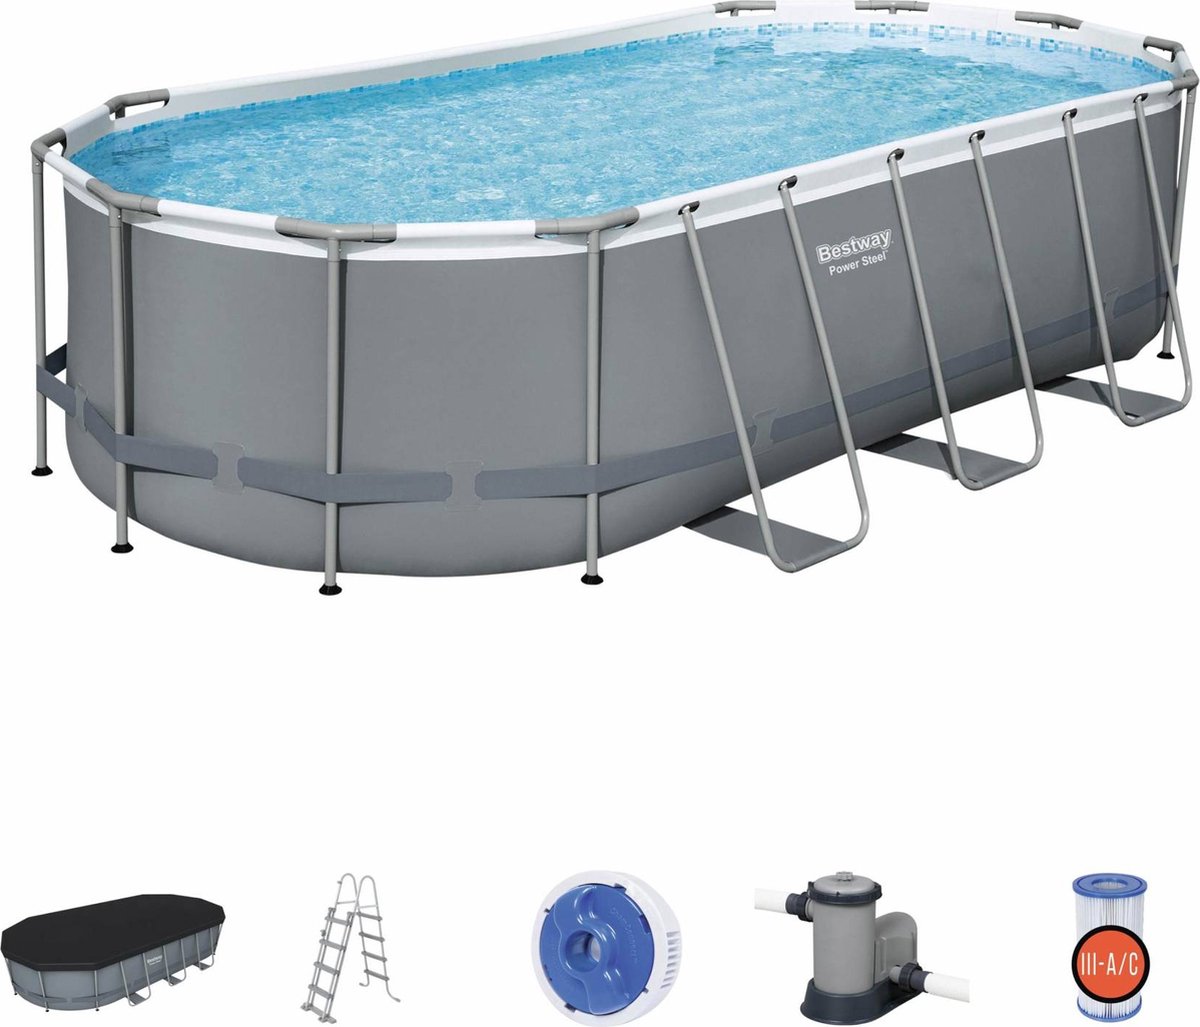 Alice's Garden Compleet BESTWAY zwembad SPINELLE – Ovaal frame zwembad - 5x3m - inclusief accessoires - Grijs